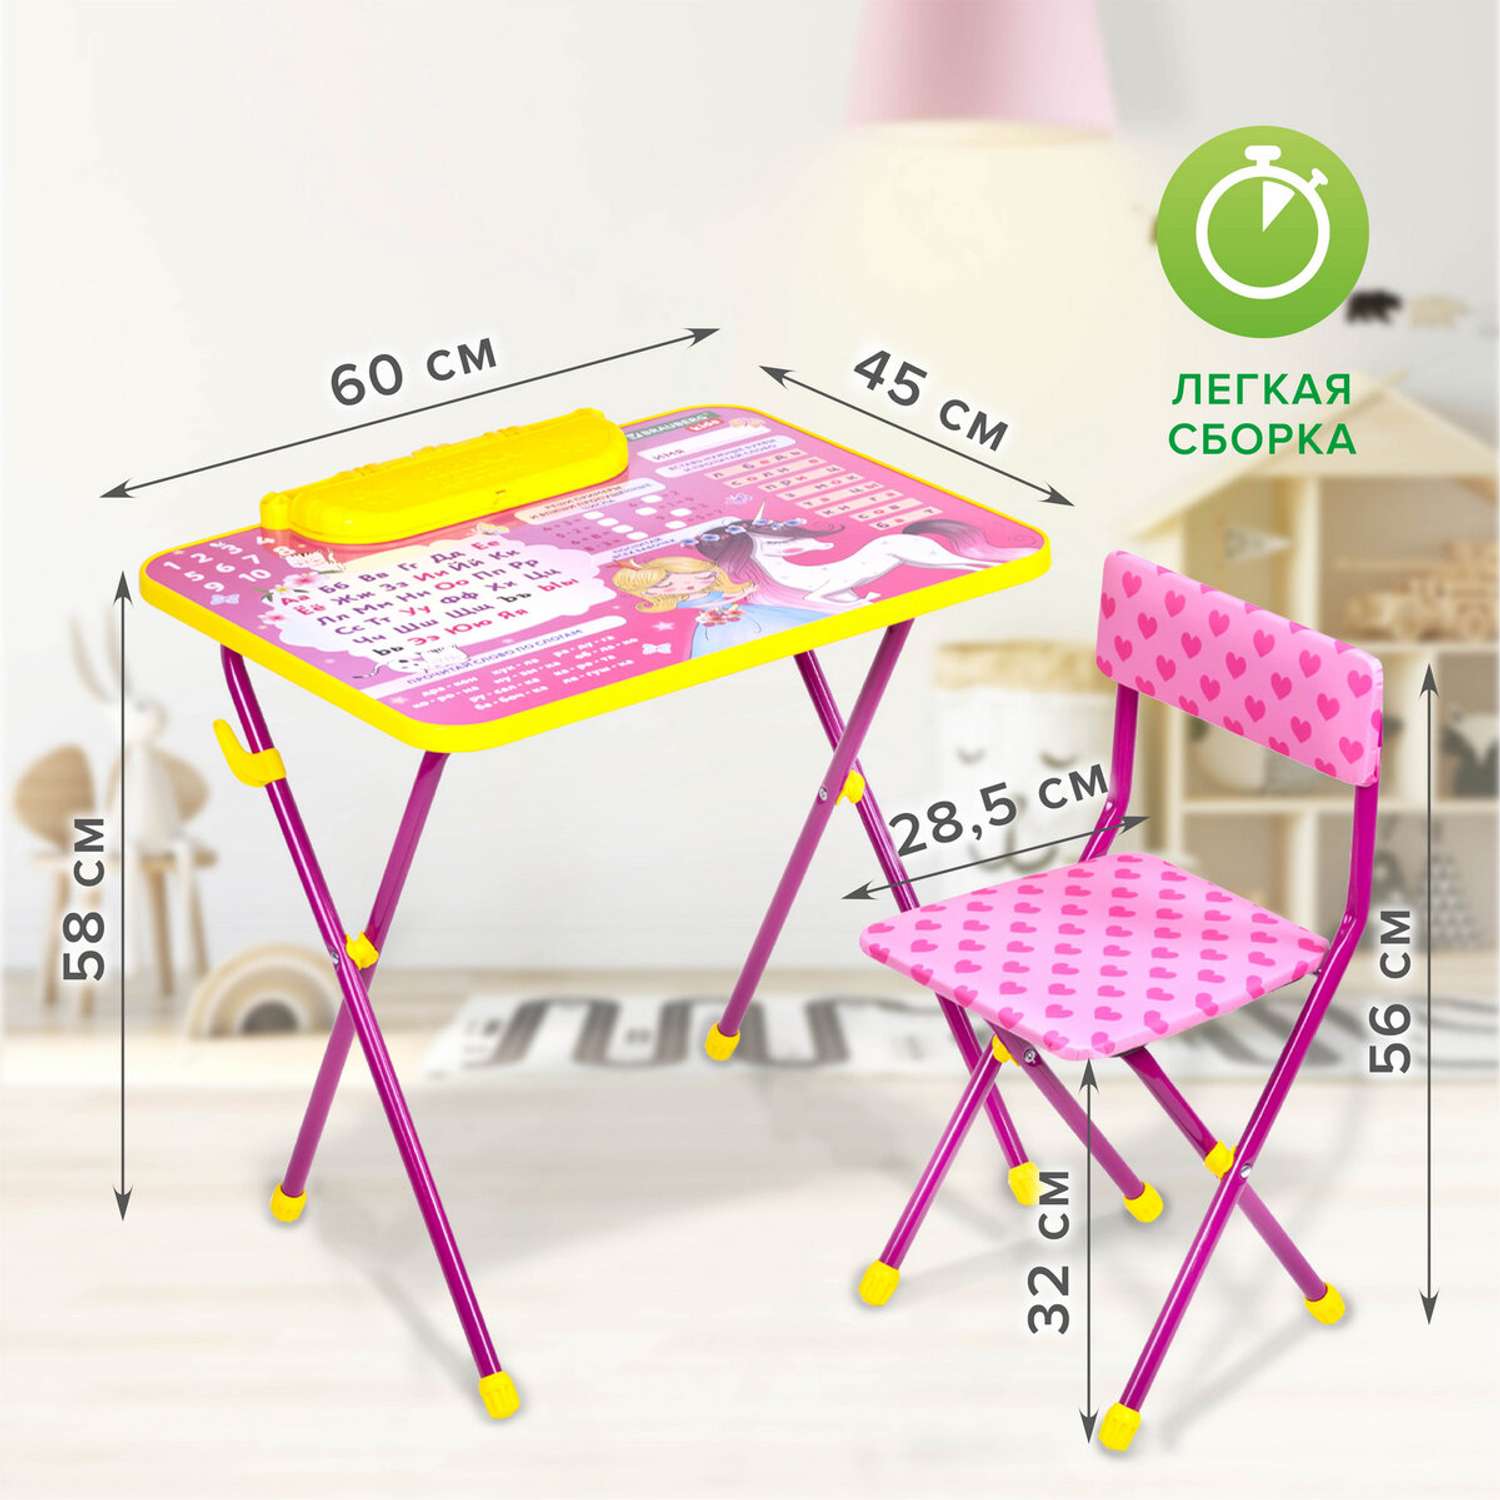 Столик и стульчик детский Brauberg игровой набор для развивающих игр для девочки розовый Принцесса - фото 9